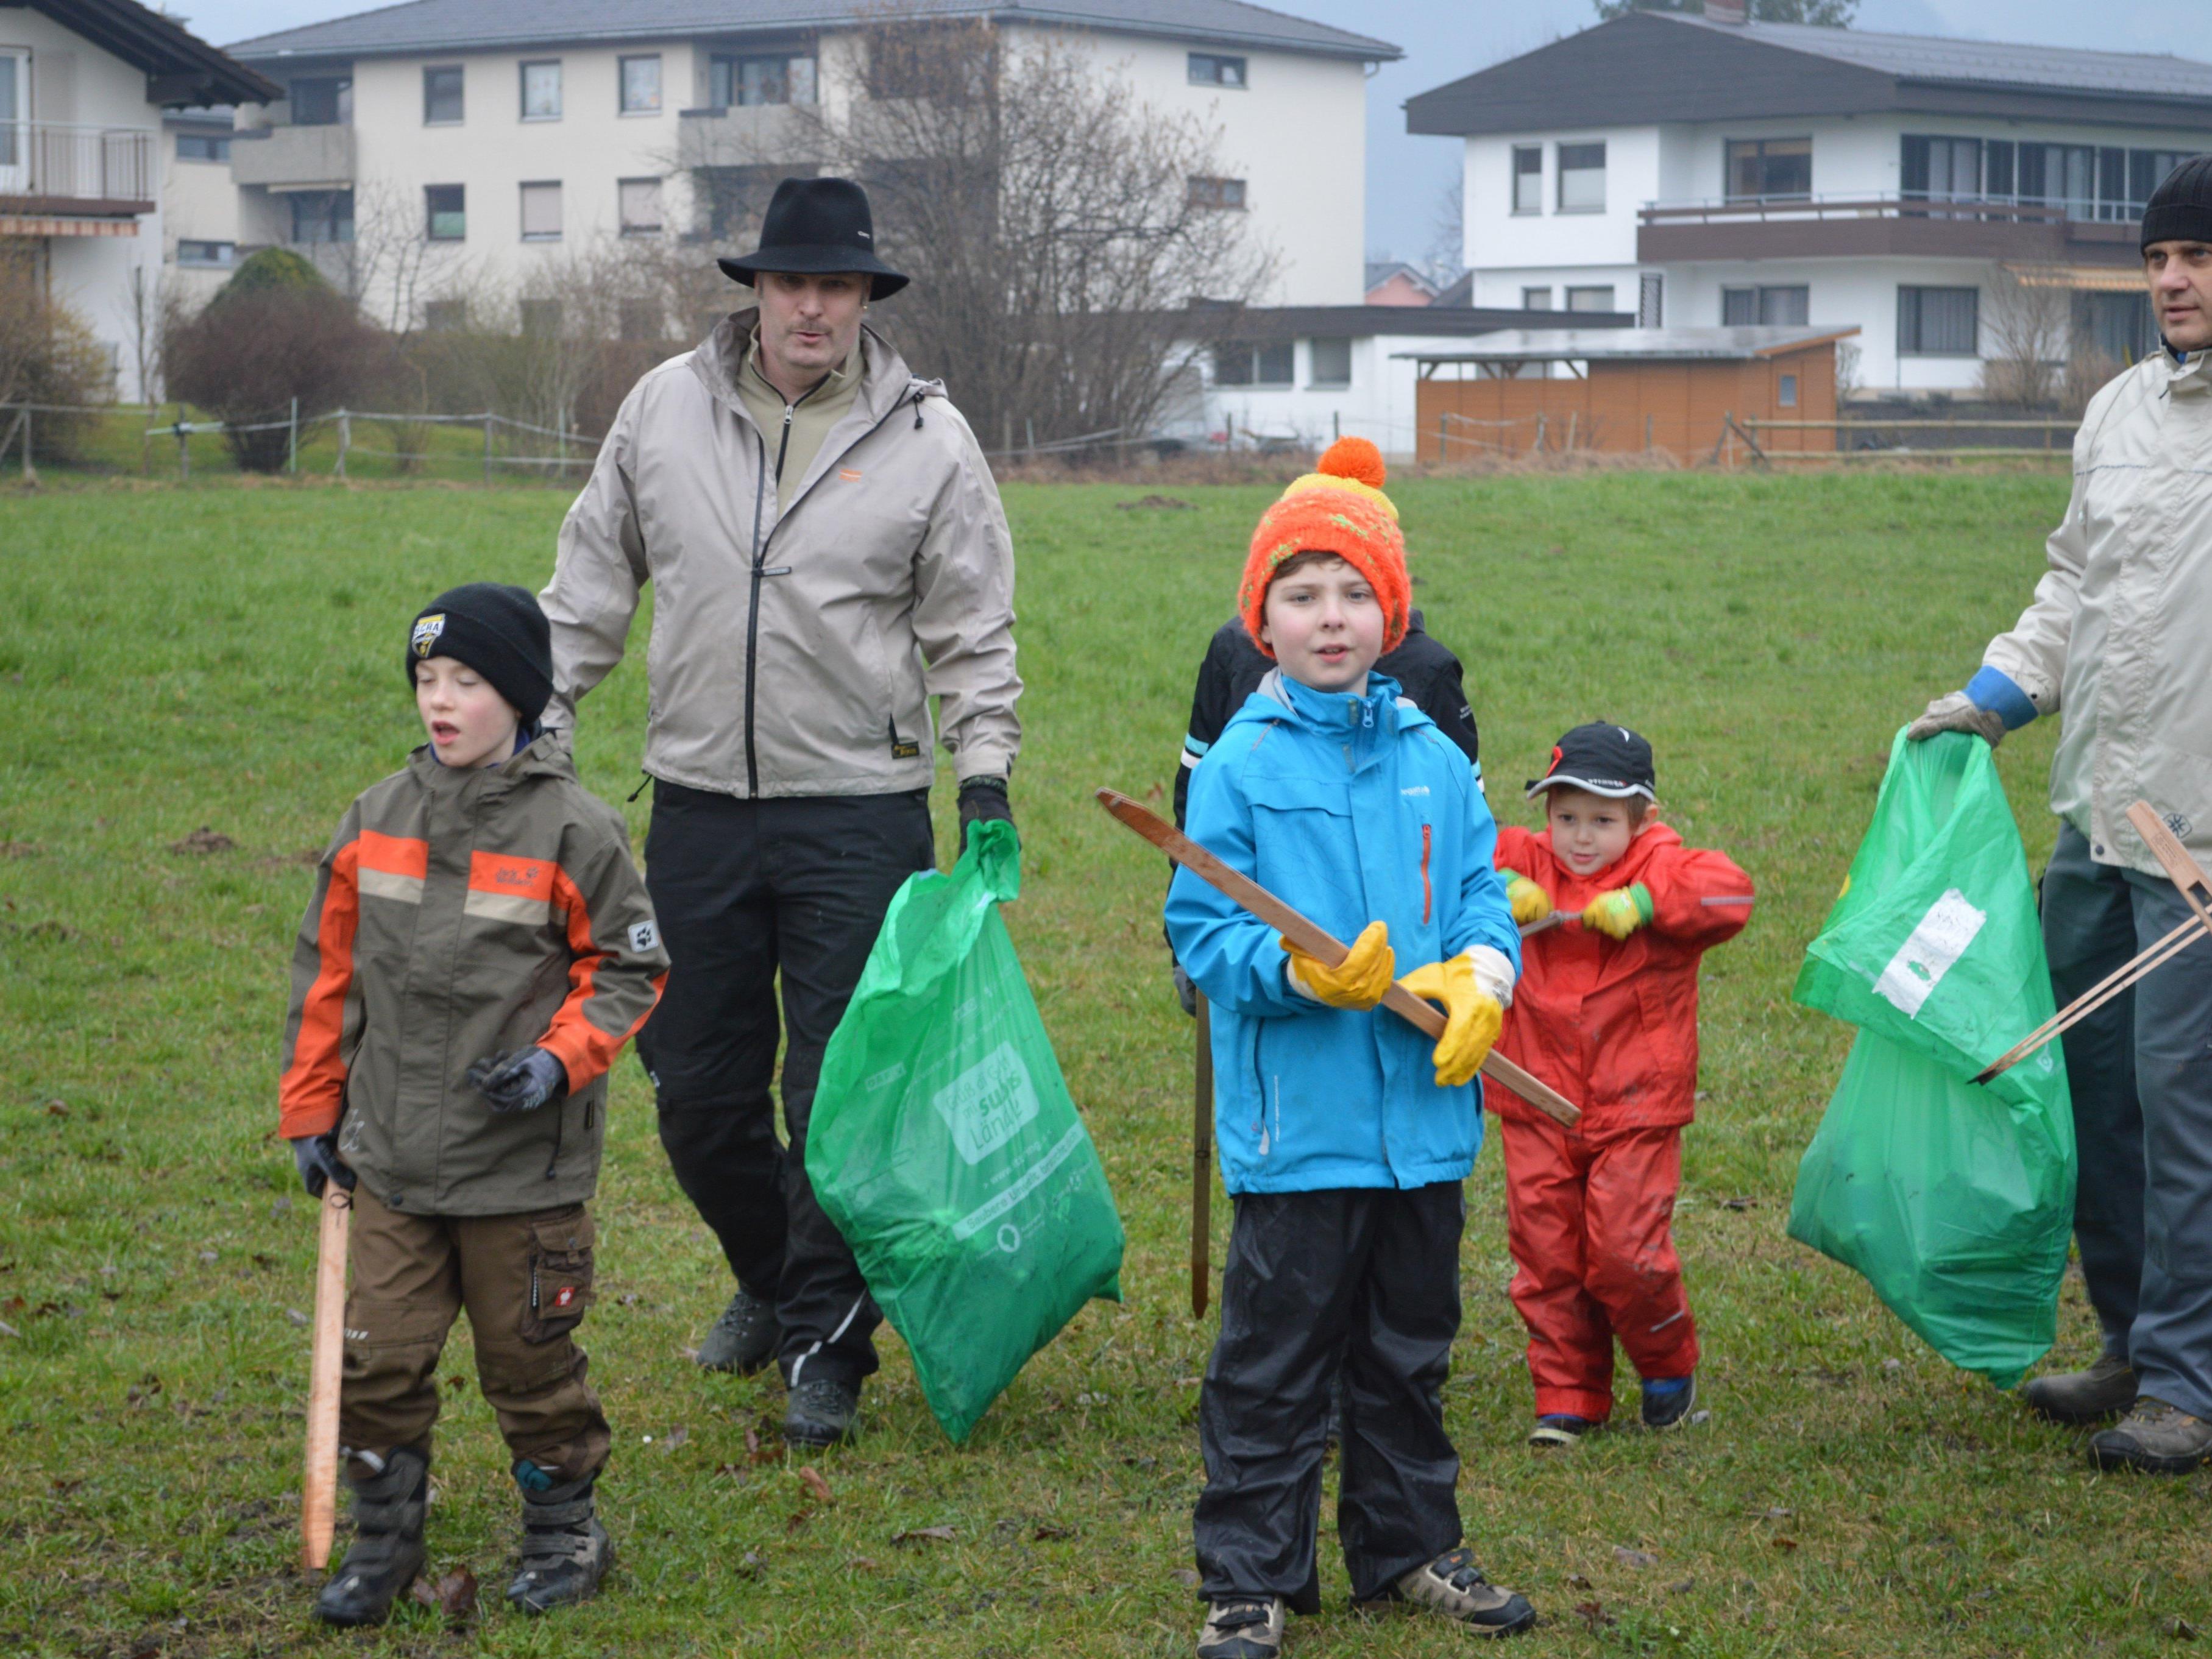 Auch in diesem Jahr sind wieder zahlreiche Freiwillige unterwegs um die Umwelt sauber zu machen